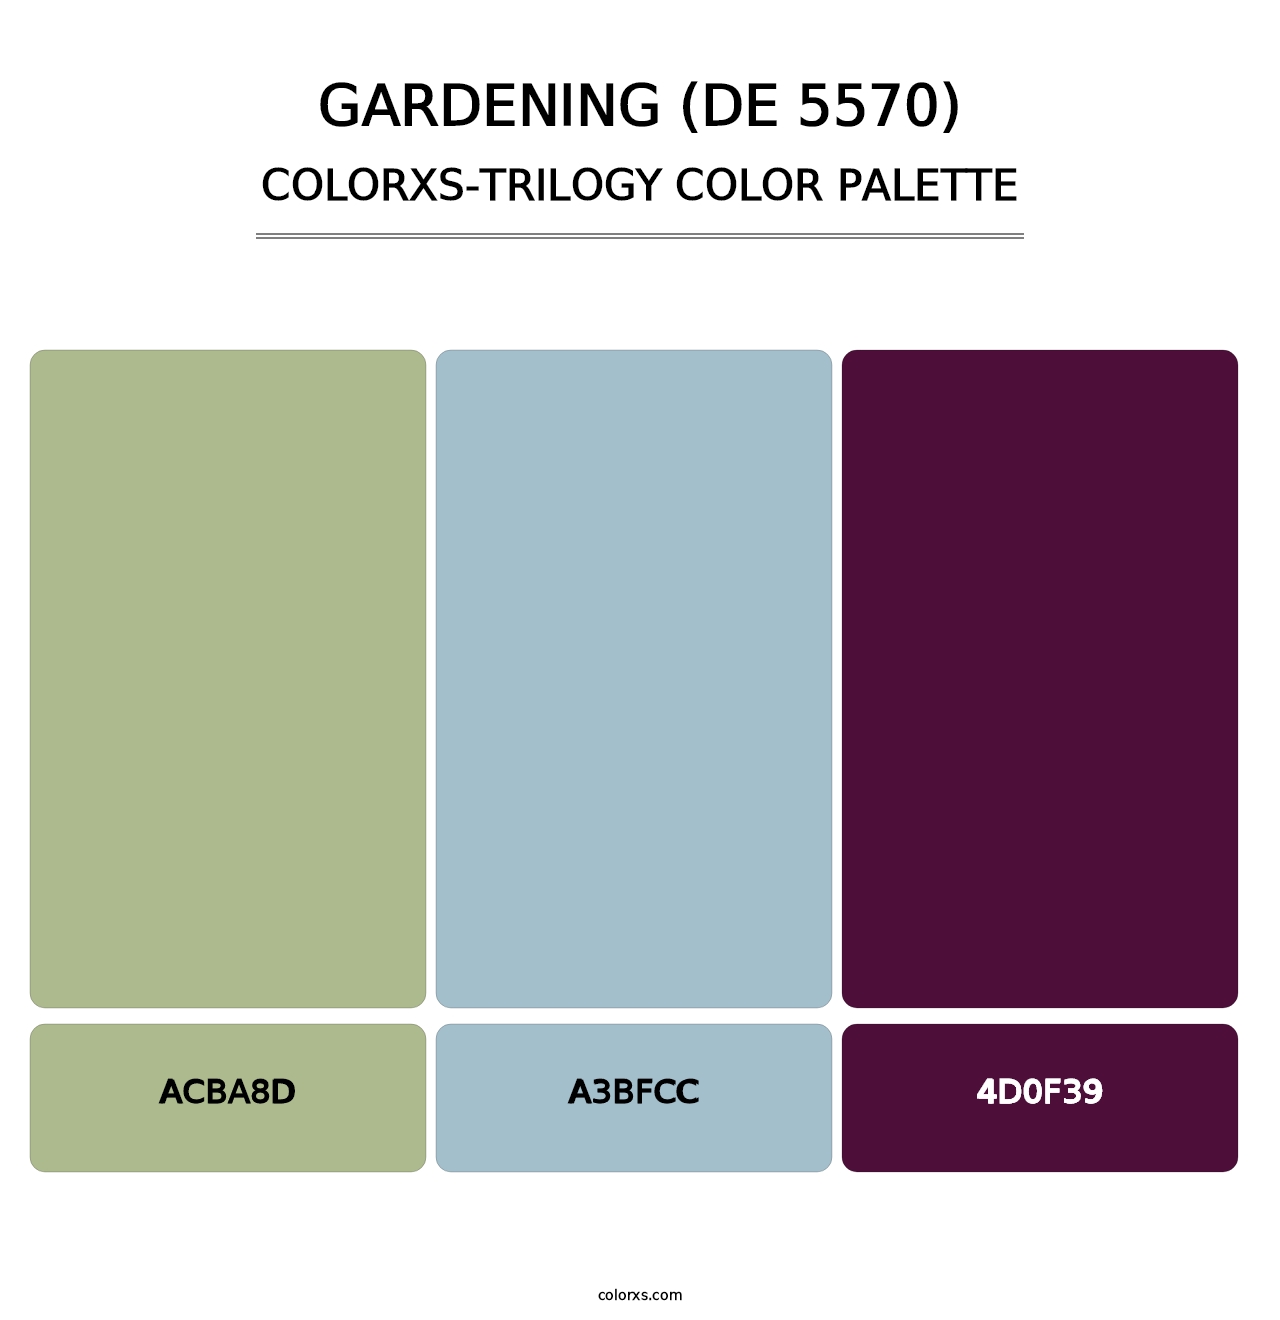 Gardening (DE 5570) - Colorxs Trilogy Palette